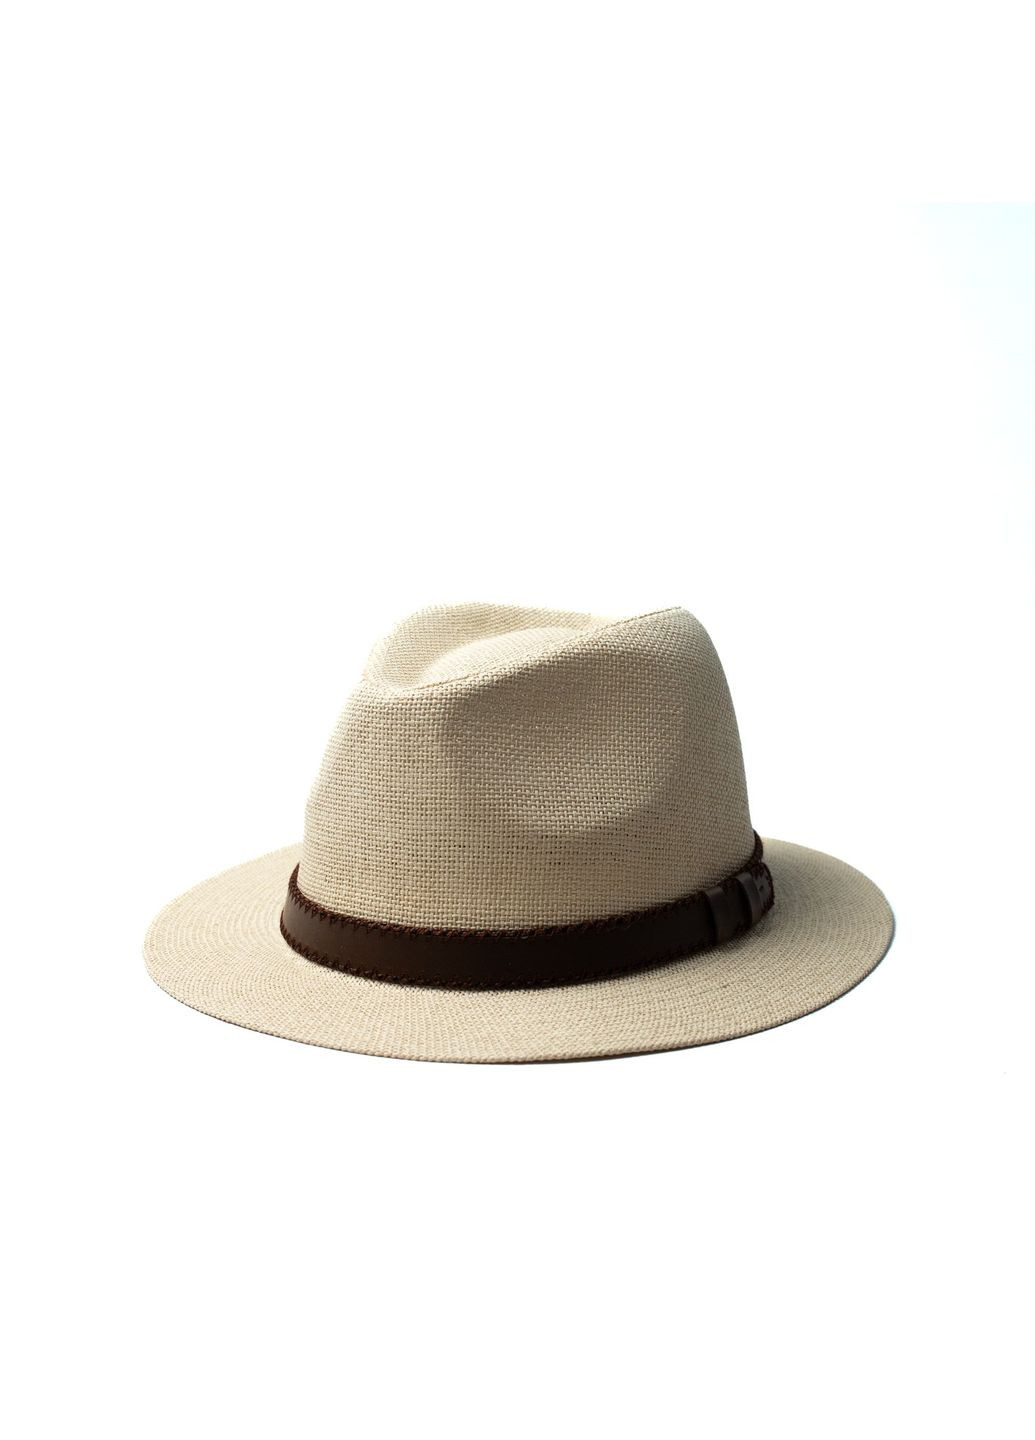 Шляпа федора мужская бумага бежевая BATTY 817-679 LuckyLOOK 817-679m (291884114)